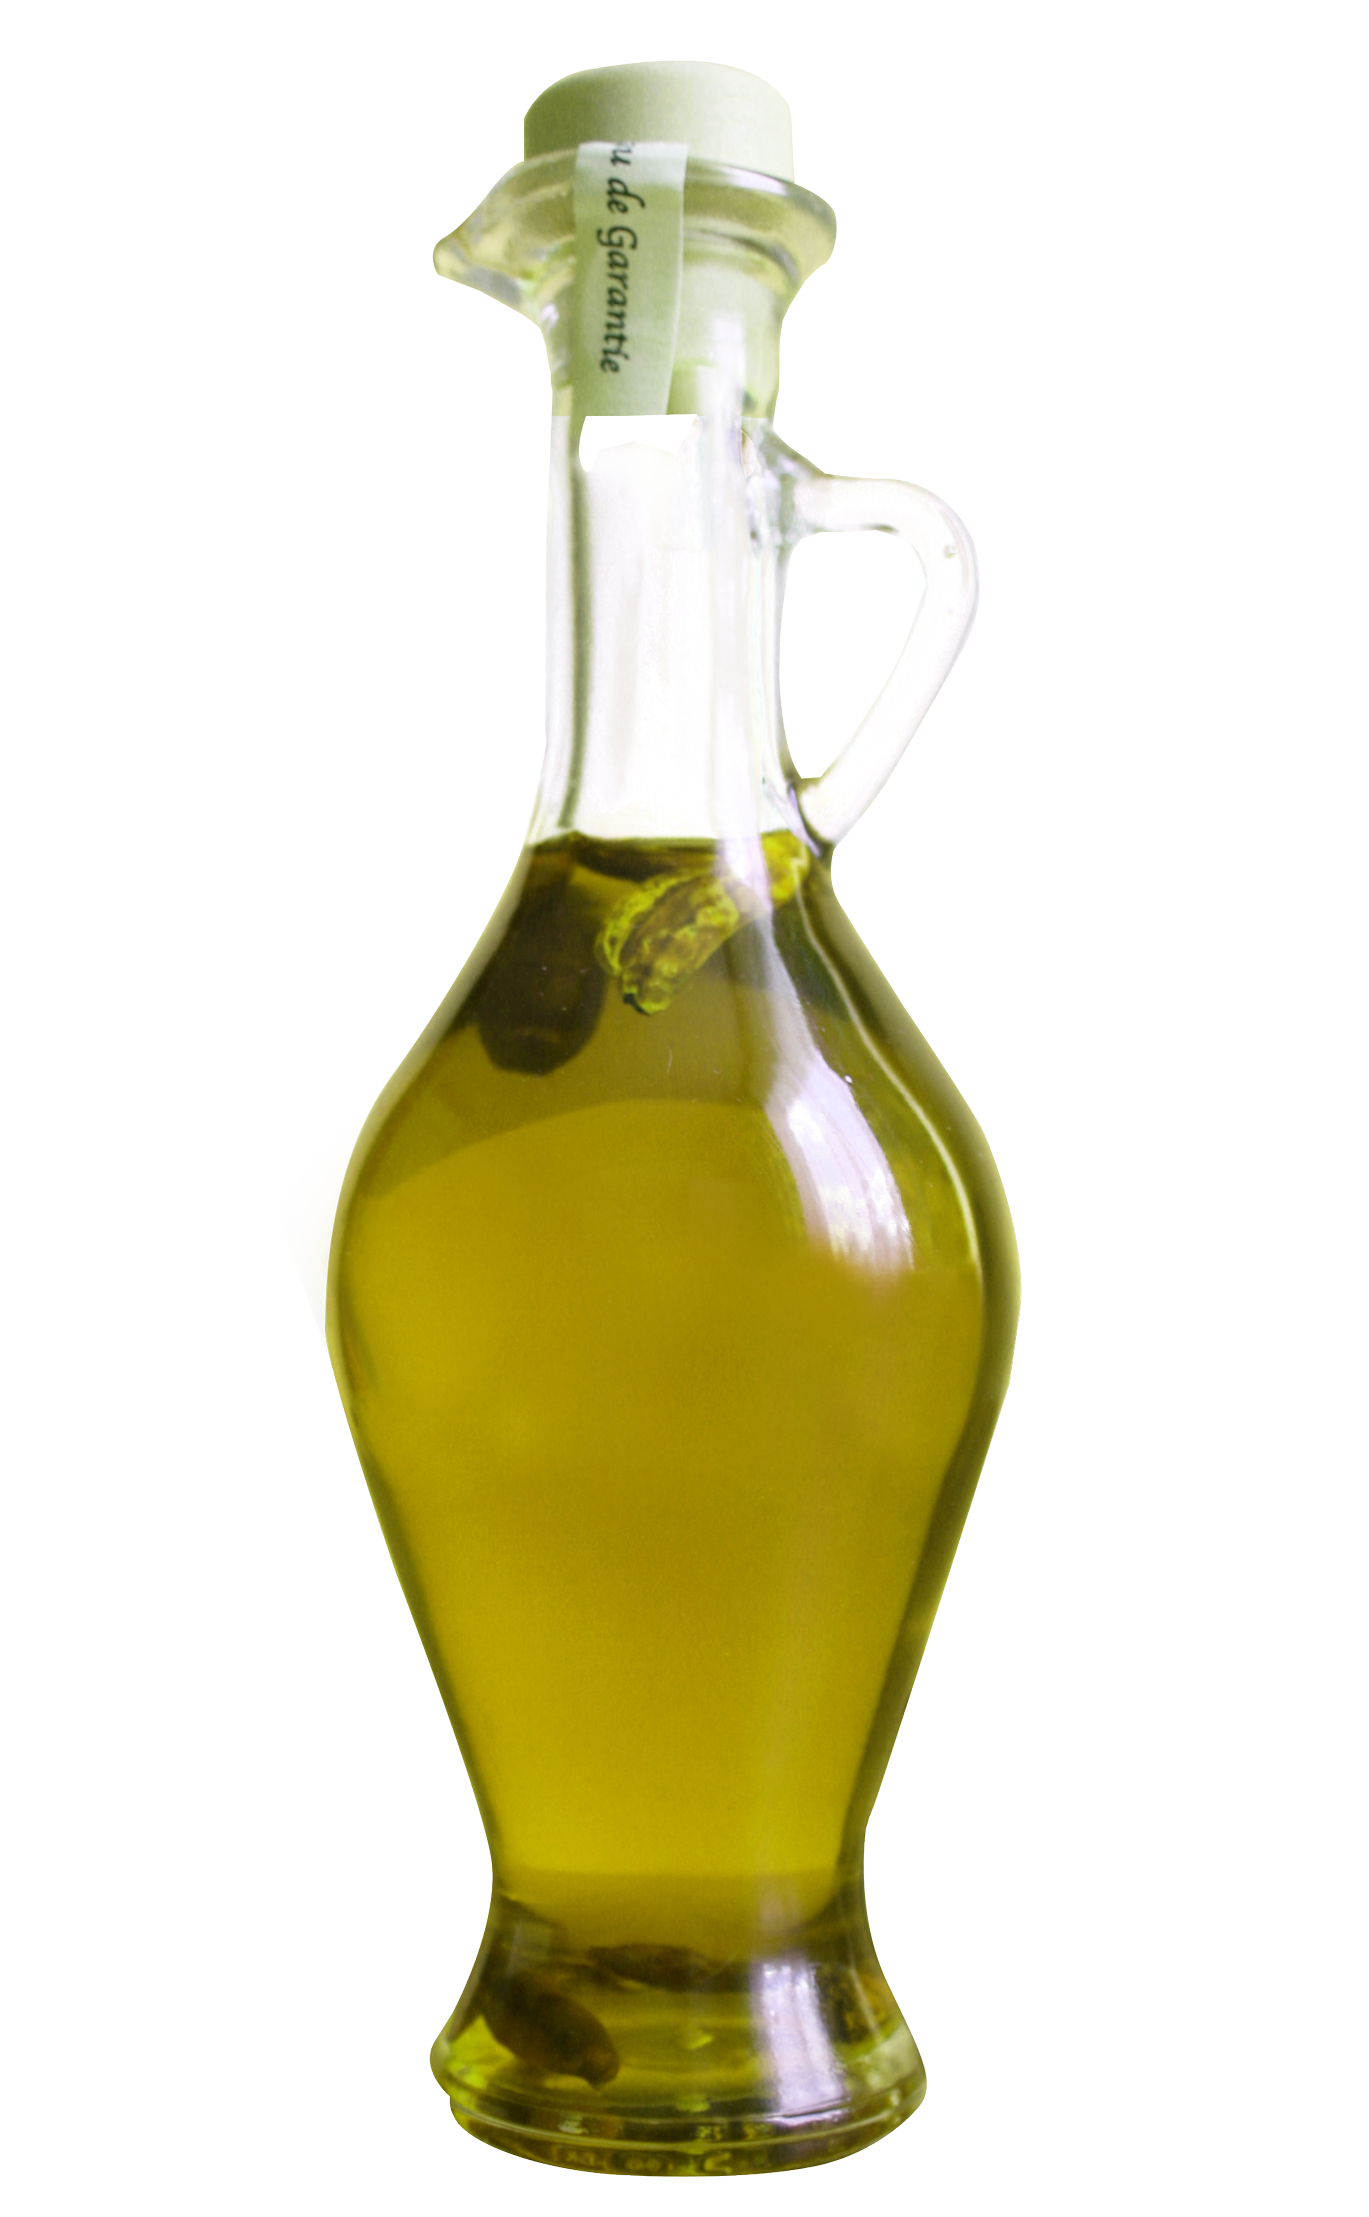 Olive Oil Bottle PNG Image - PurePNG | Free transparent CC0 PNG Image ...